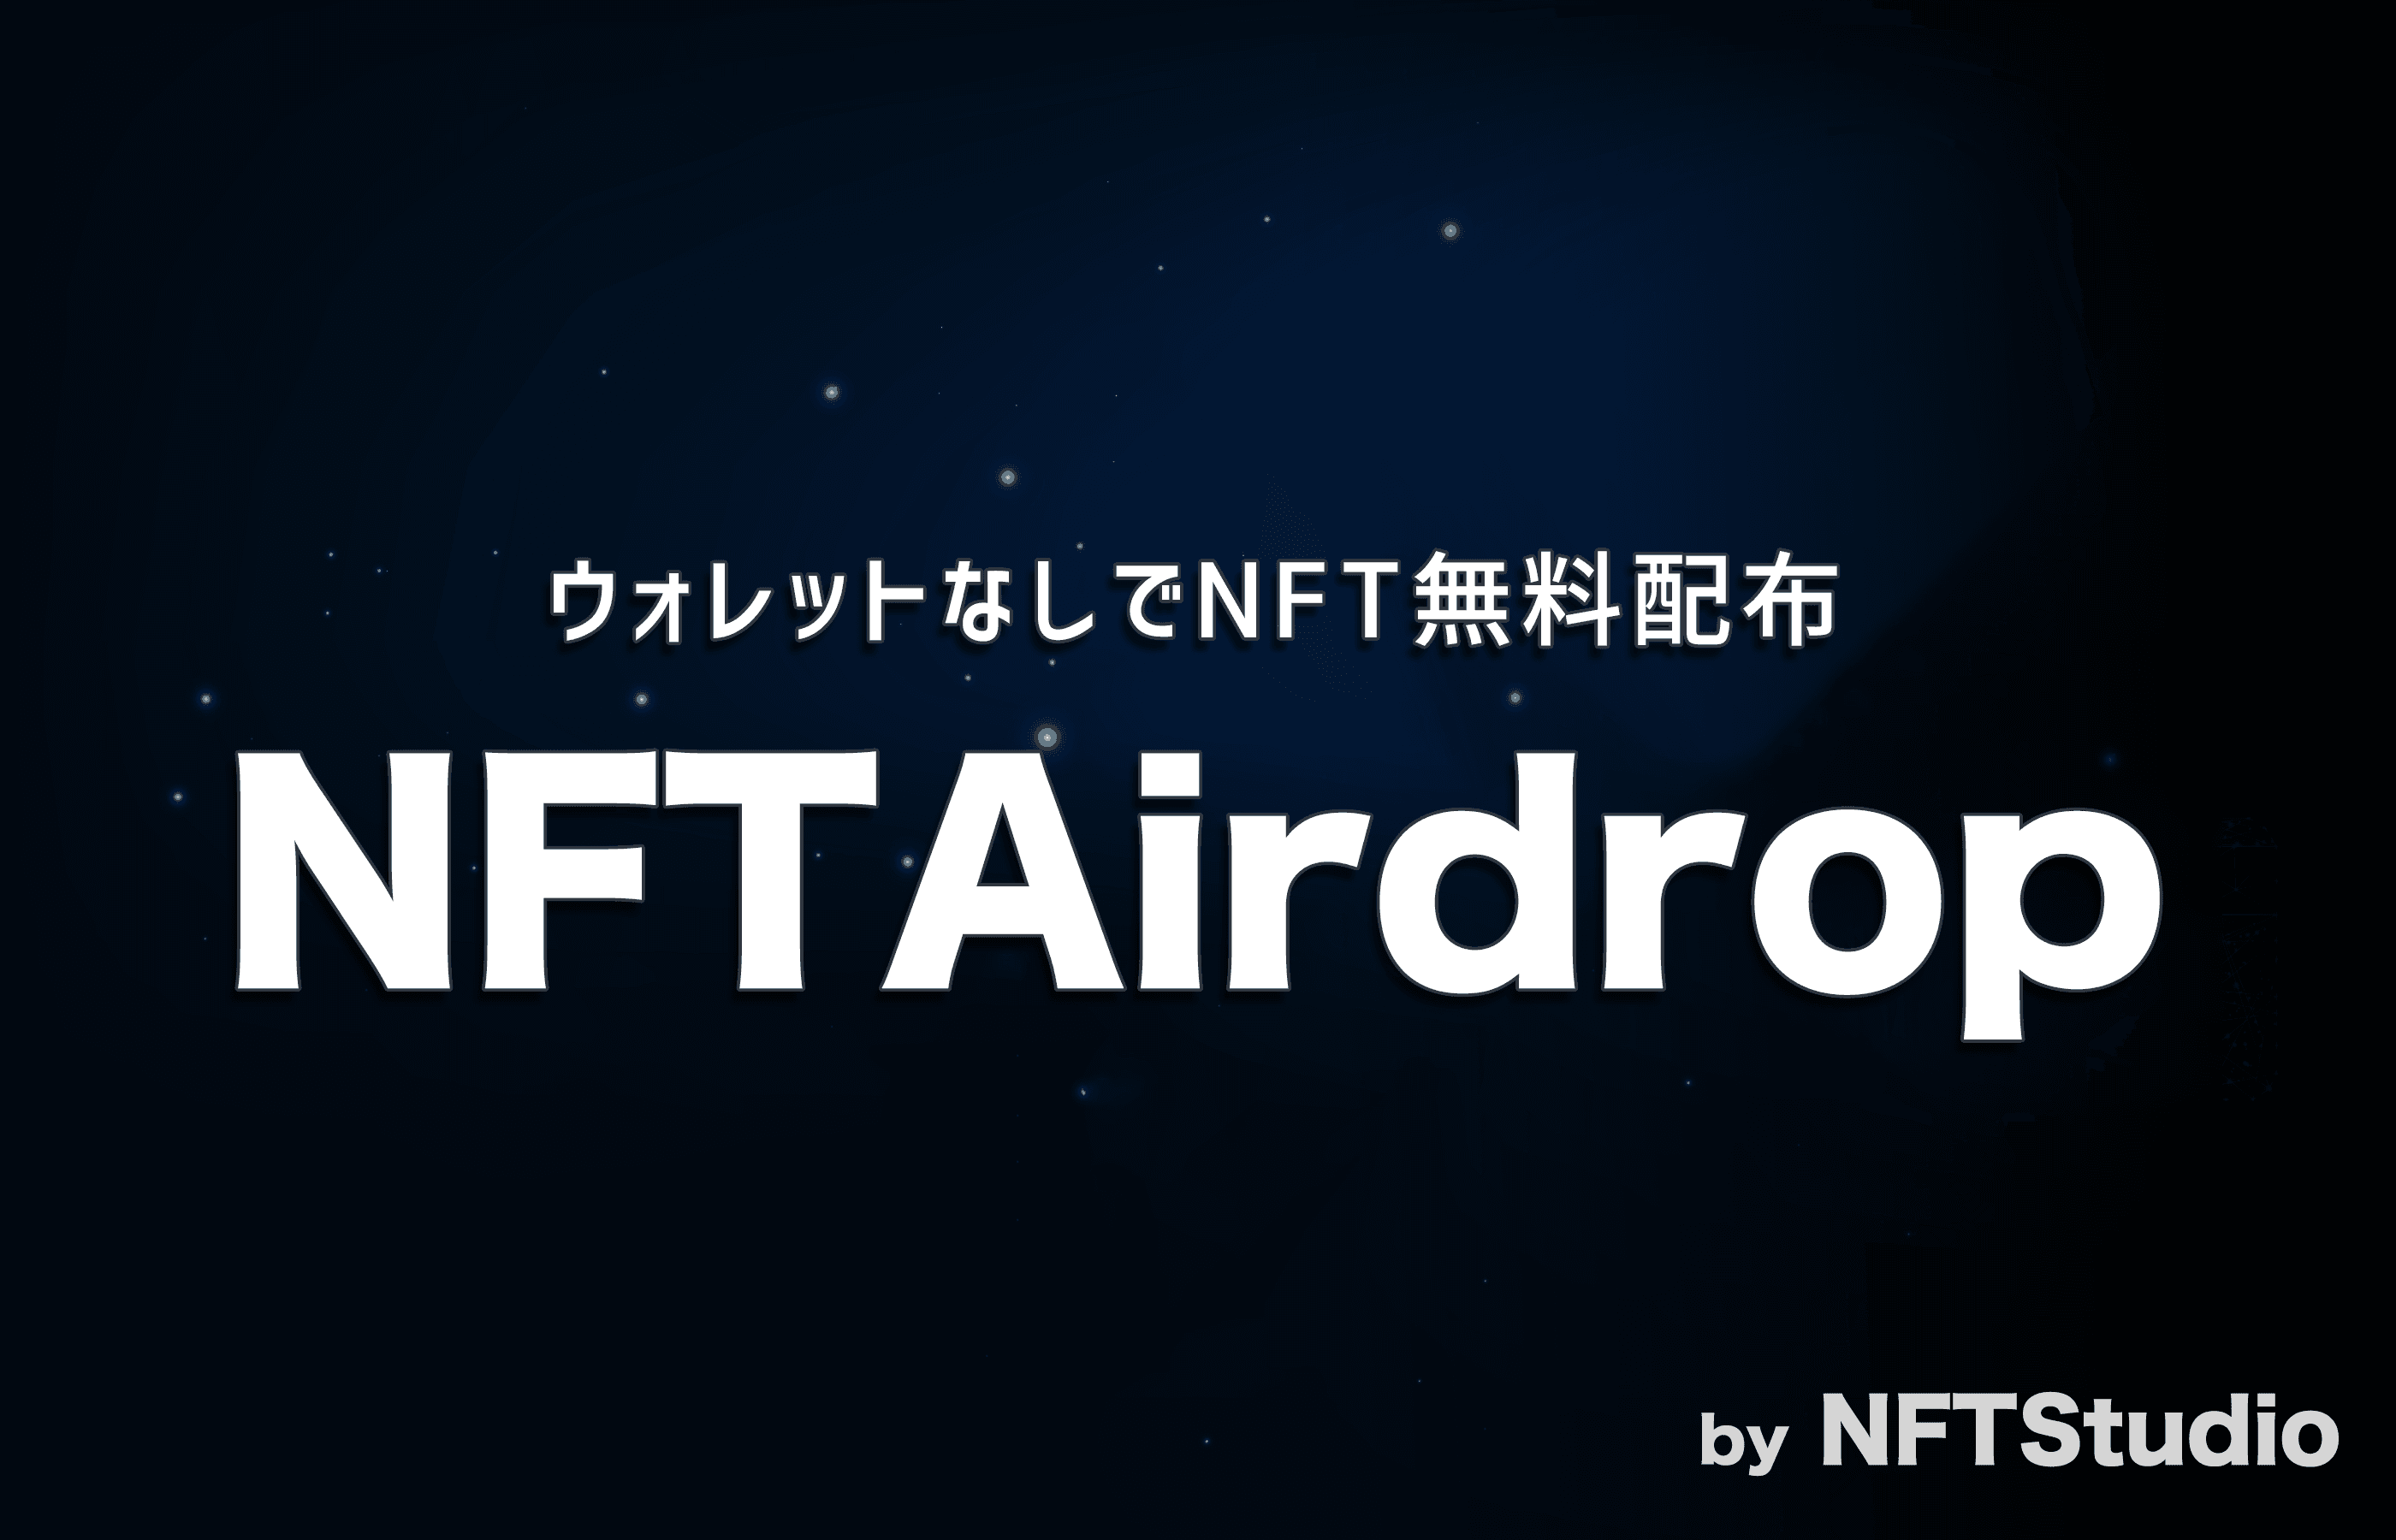 Nftstudioがnftの無料配布サービス Nftairdrop を開始 京まふ21にて安田現象氏の記念nft をqrコードで配布 Cryptogames株式会社のプレスリリース